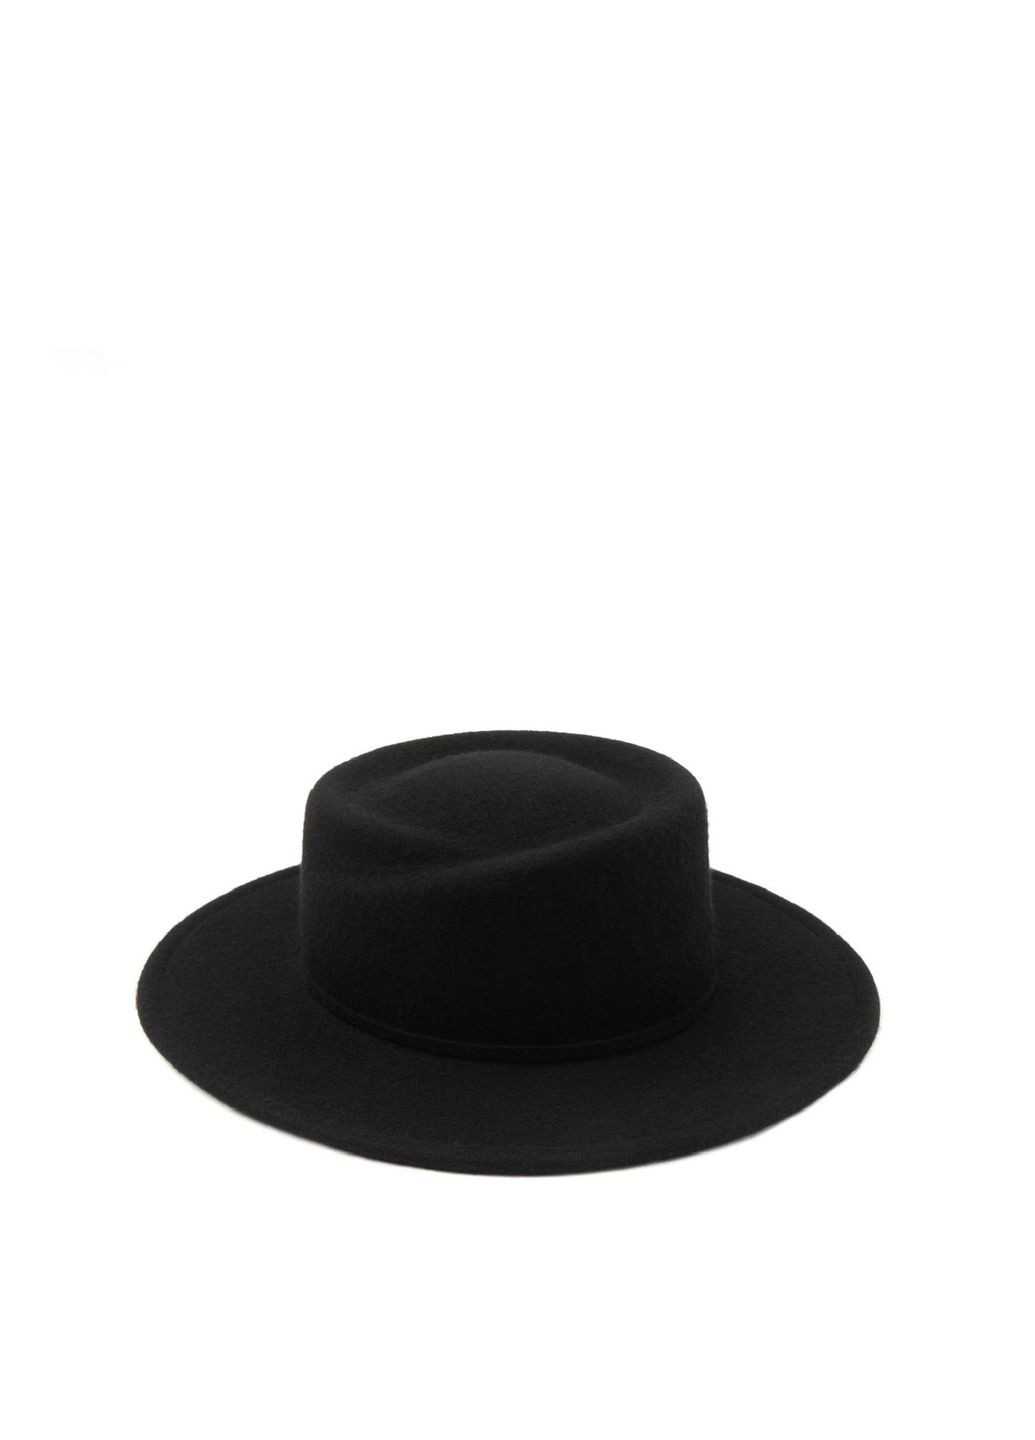 Шляпа канотье женская с серебряной цепочкой и фигурным верхом фетр черная LuckyLOOK 943-040 (289478315)